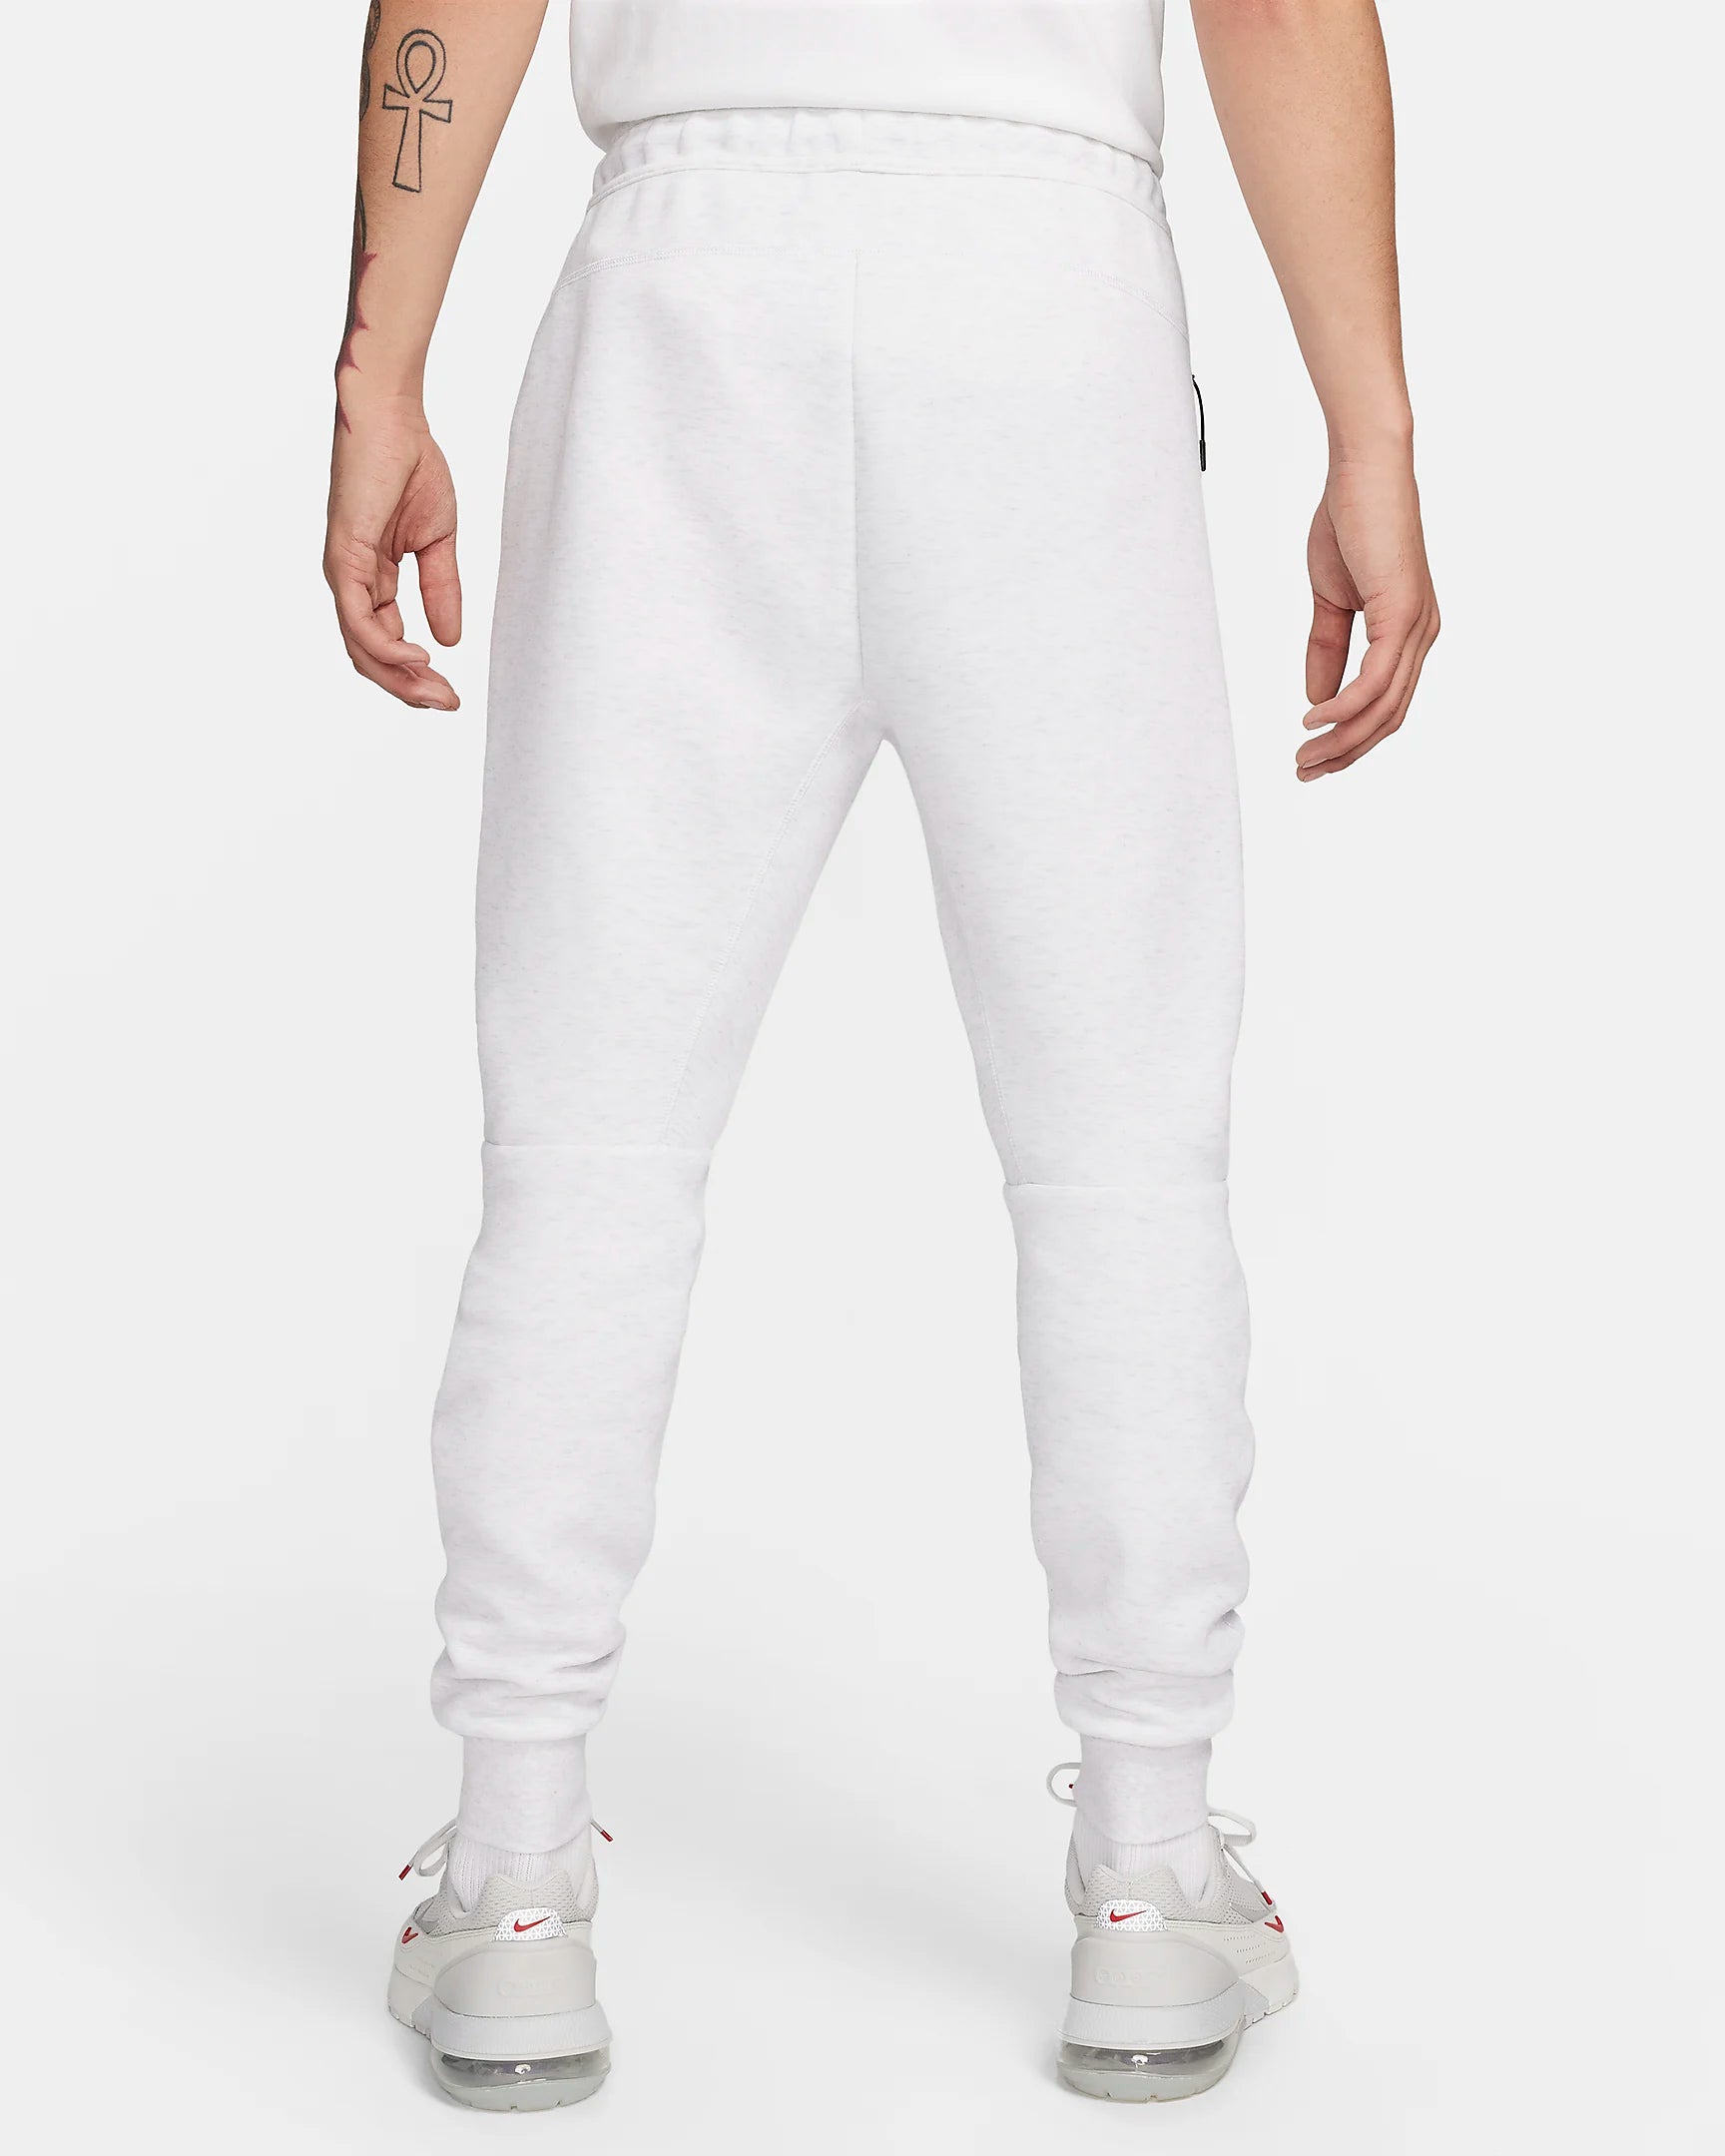 Pantalon Nike Tech Fleece - Gris/Noir